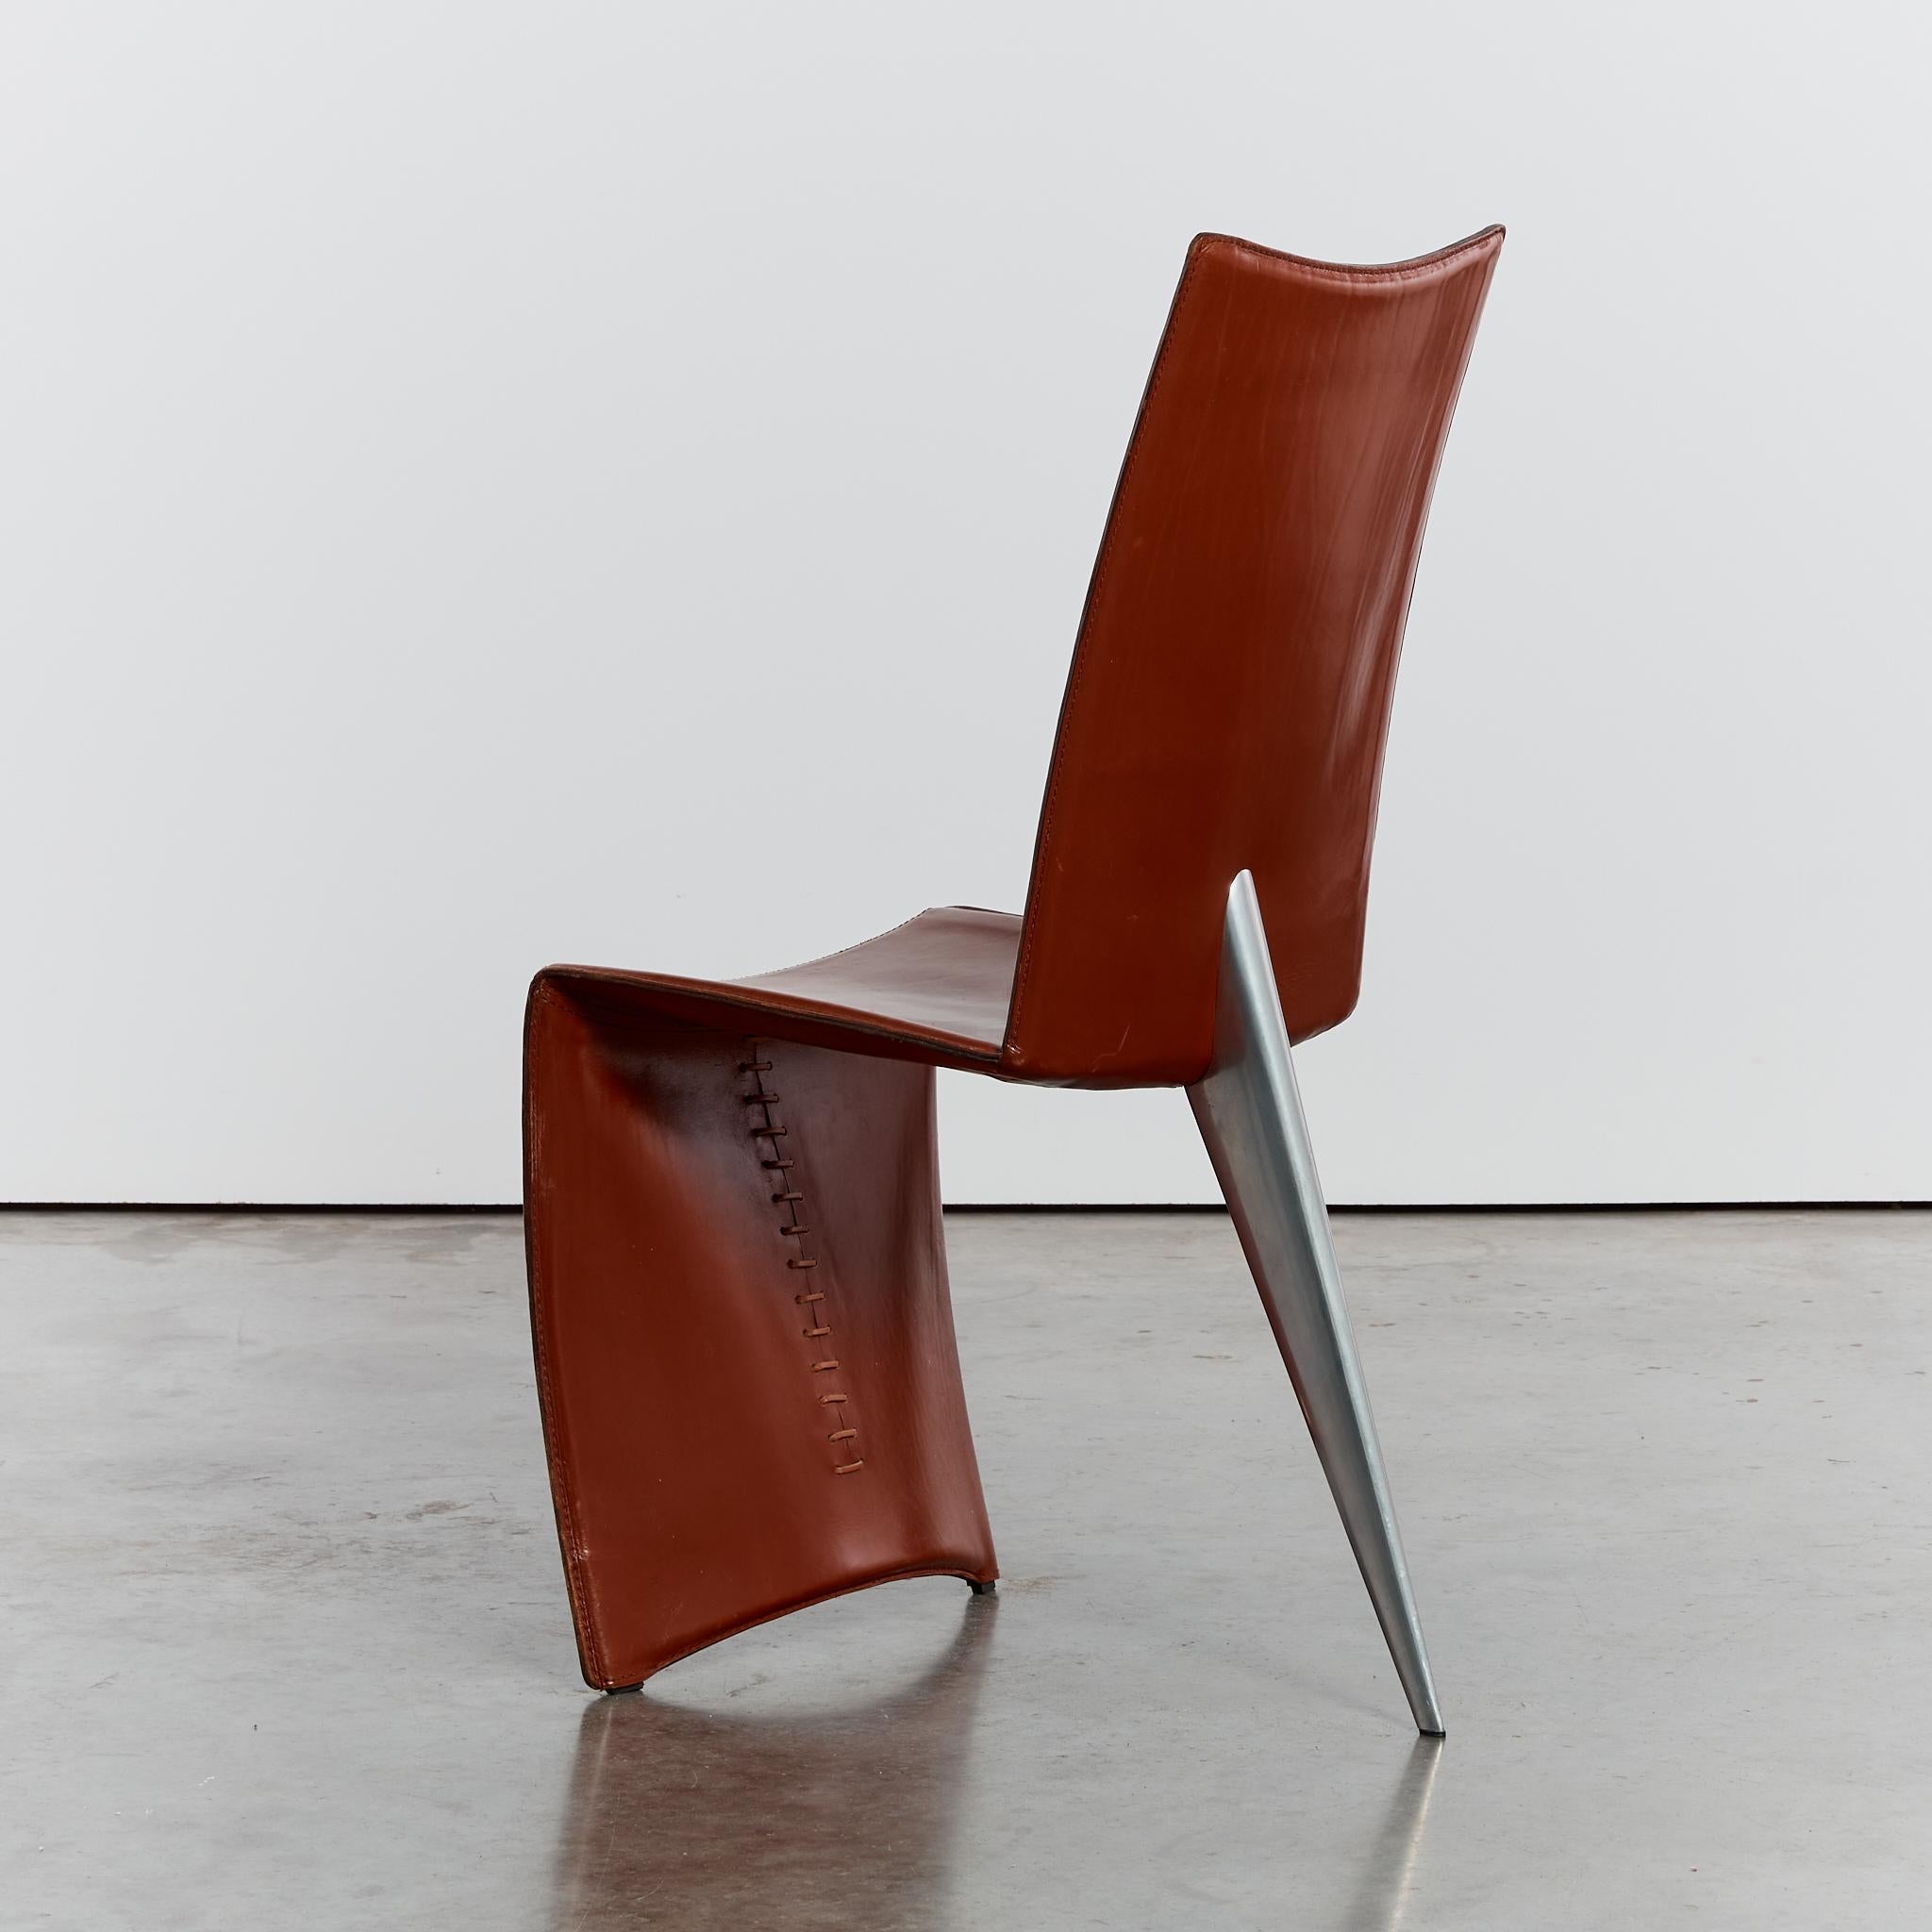 Ed Archer-Stuhl von Philippe Starck für Driade (20. Jahrhundert)